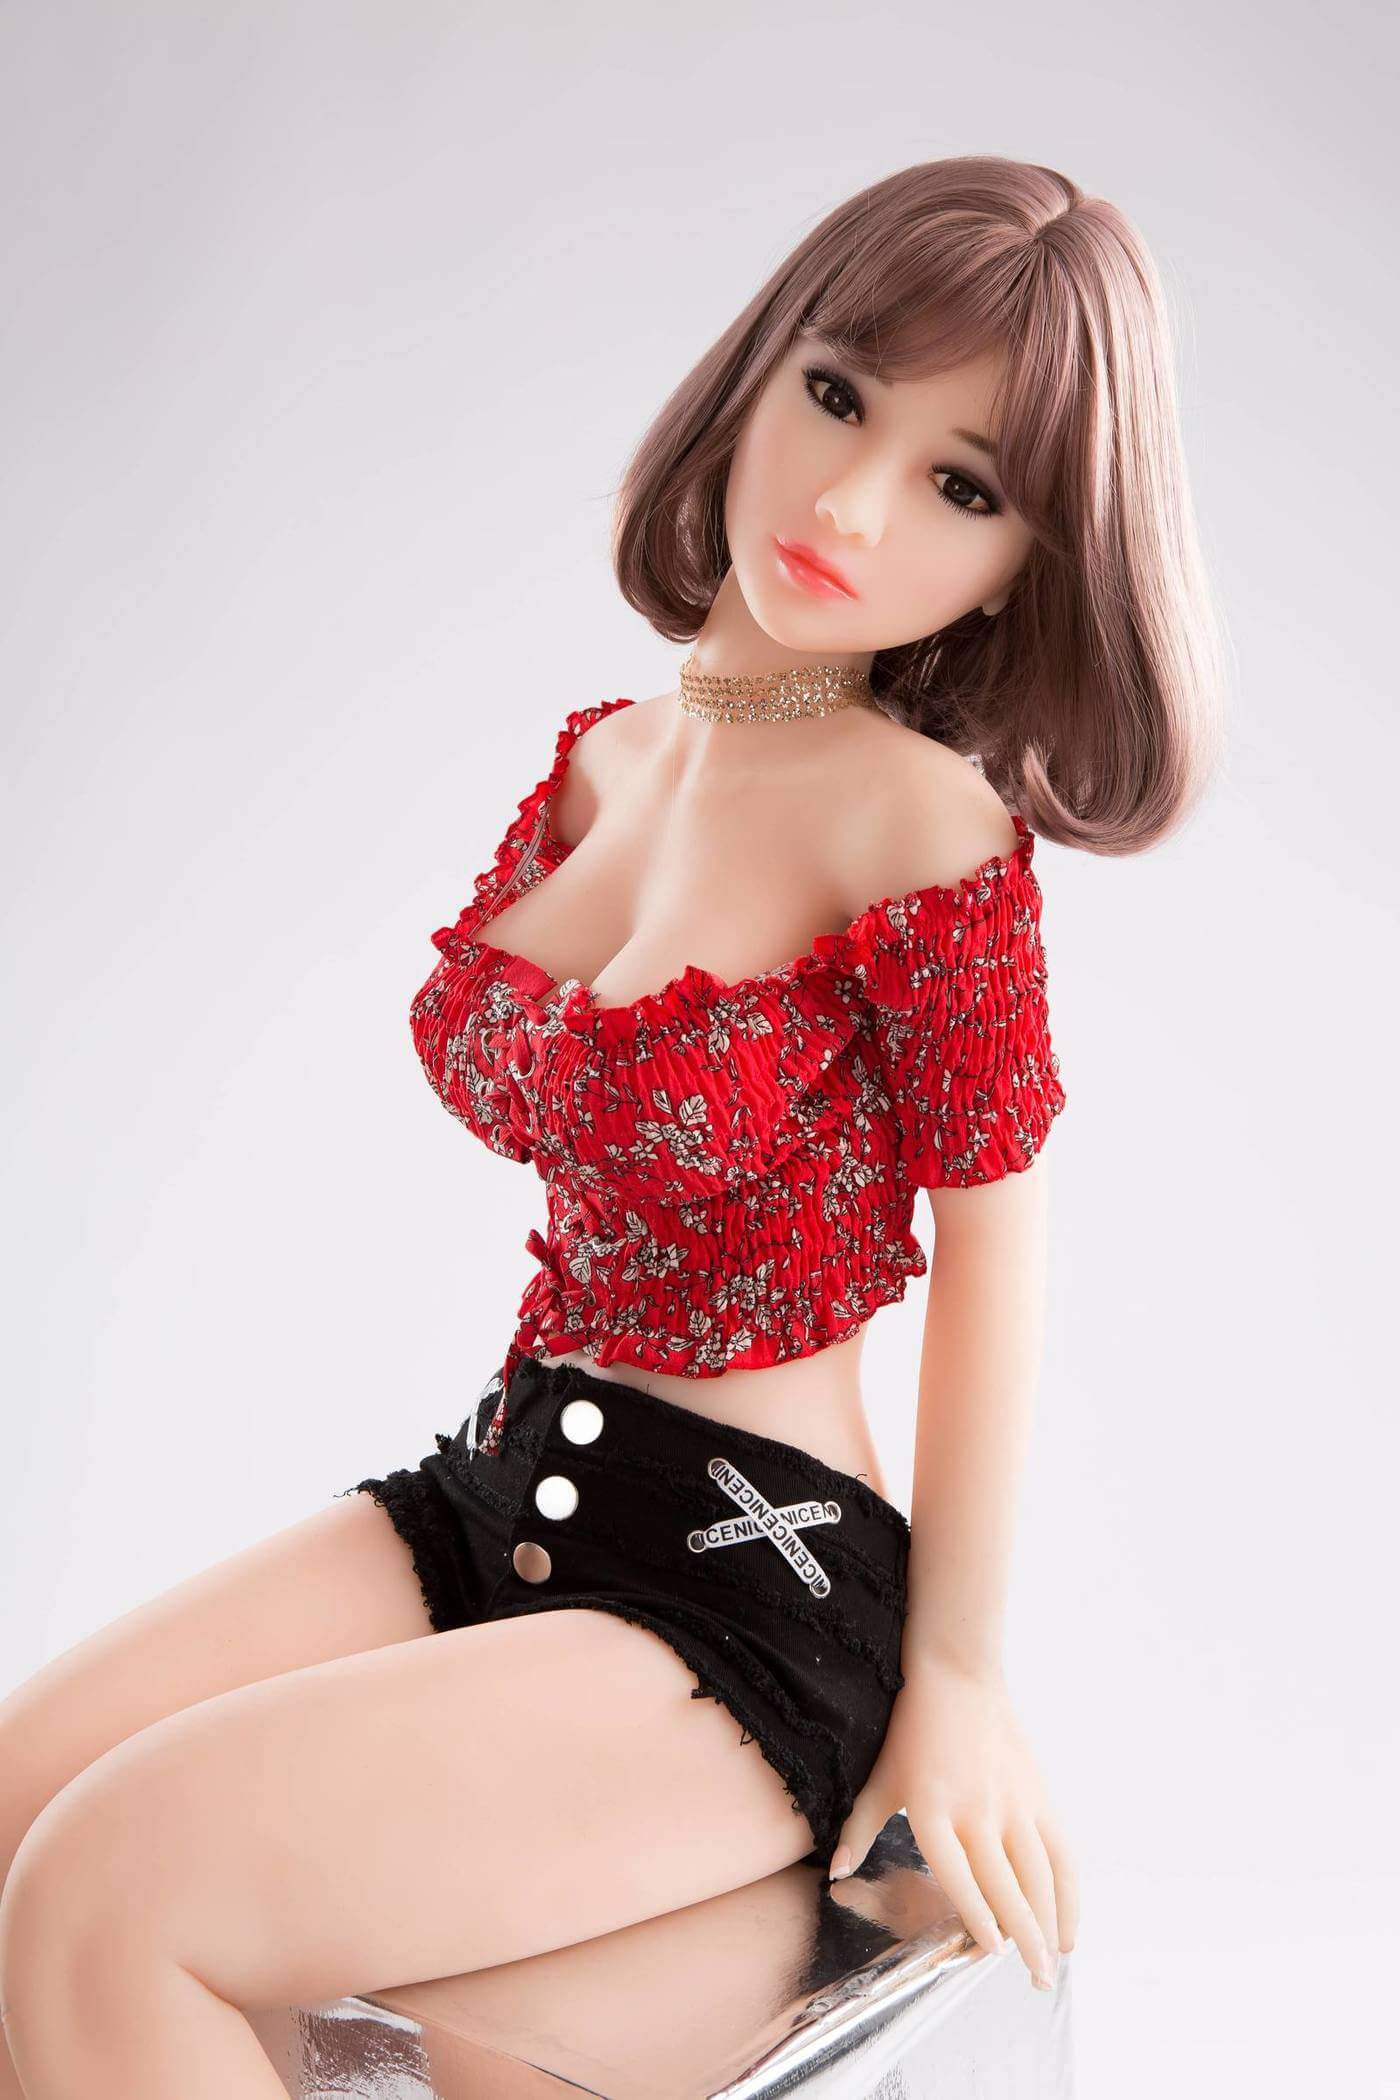 Asian teen short hair sex dolls_9_8